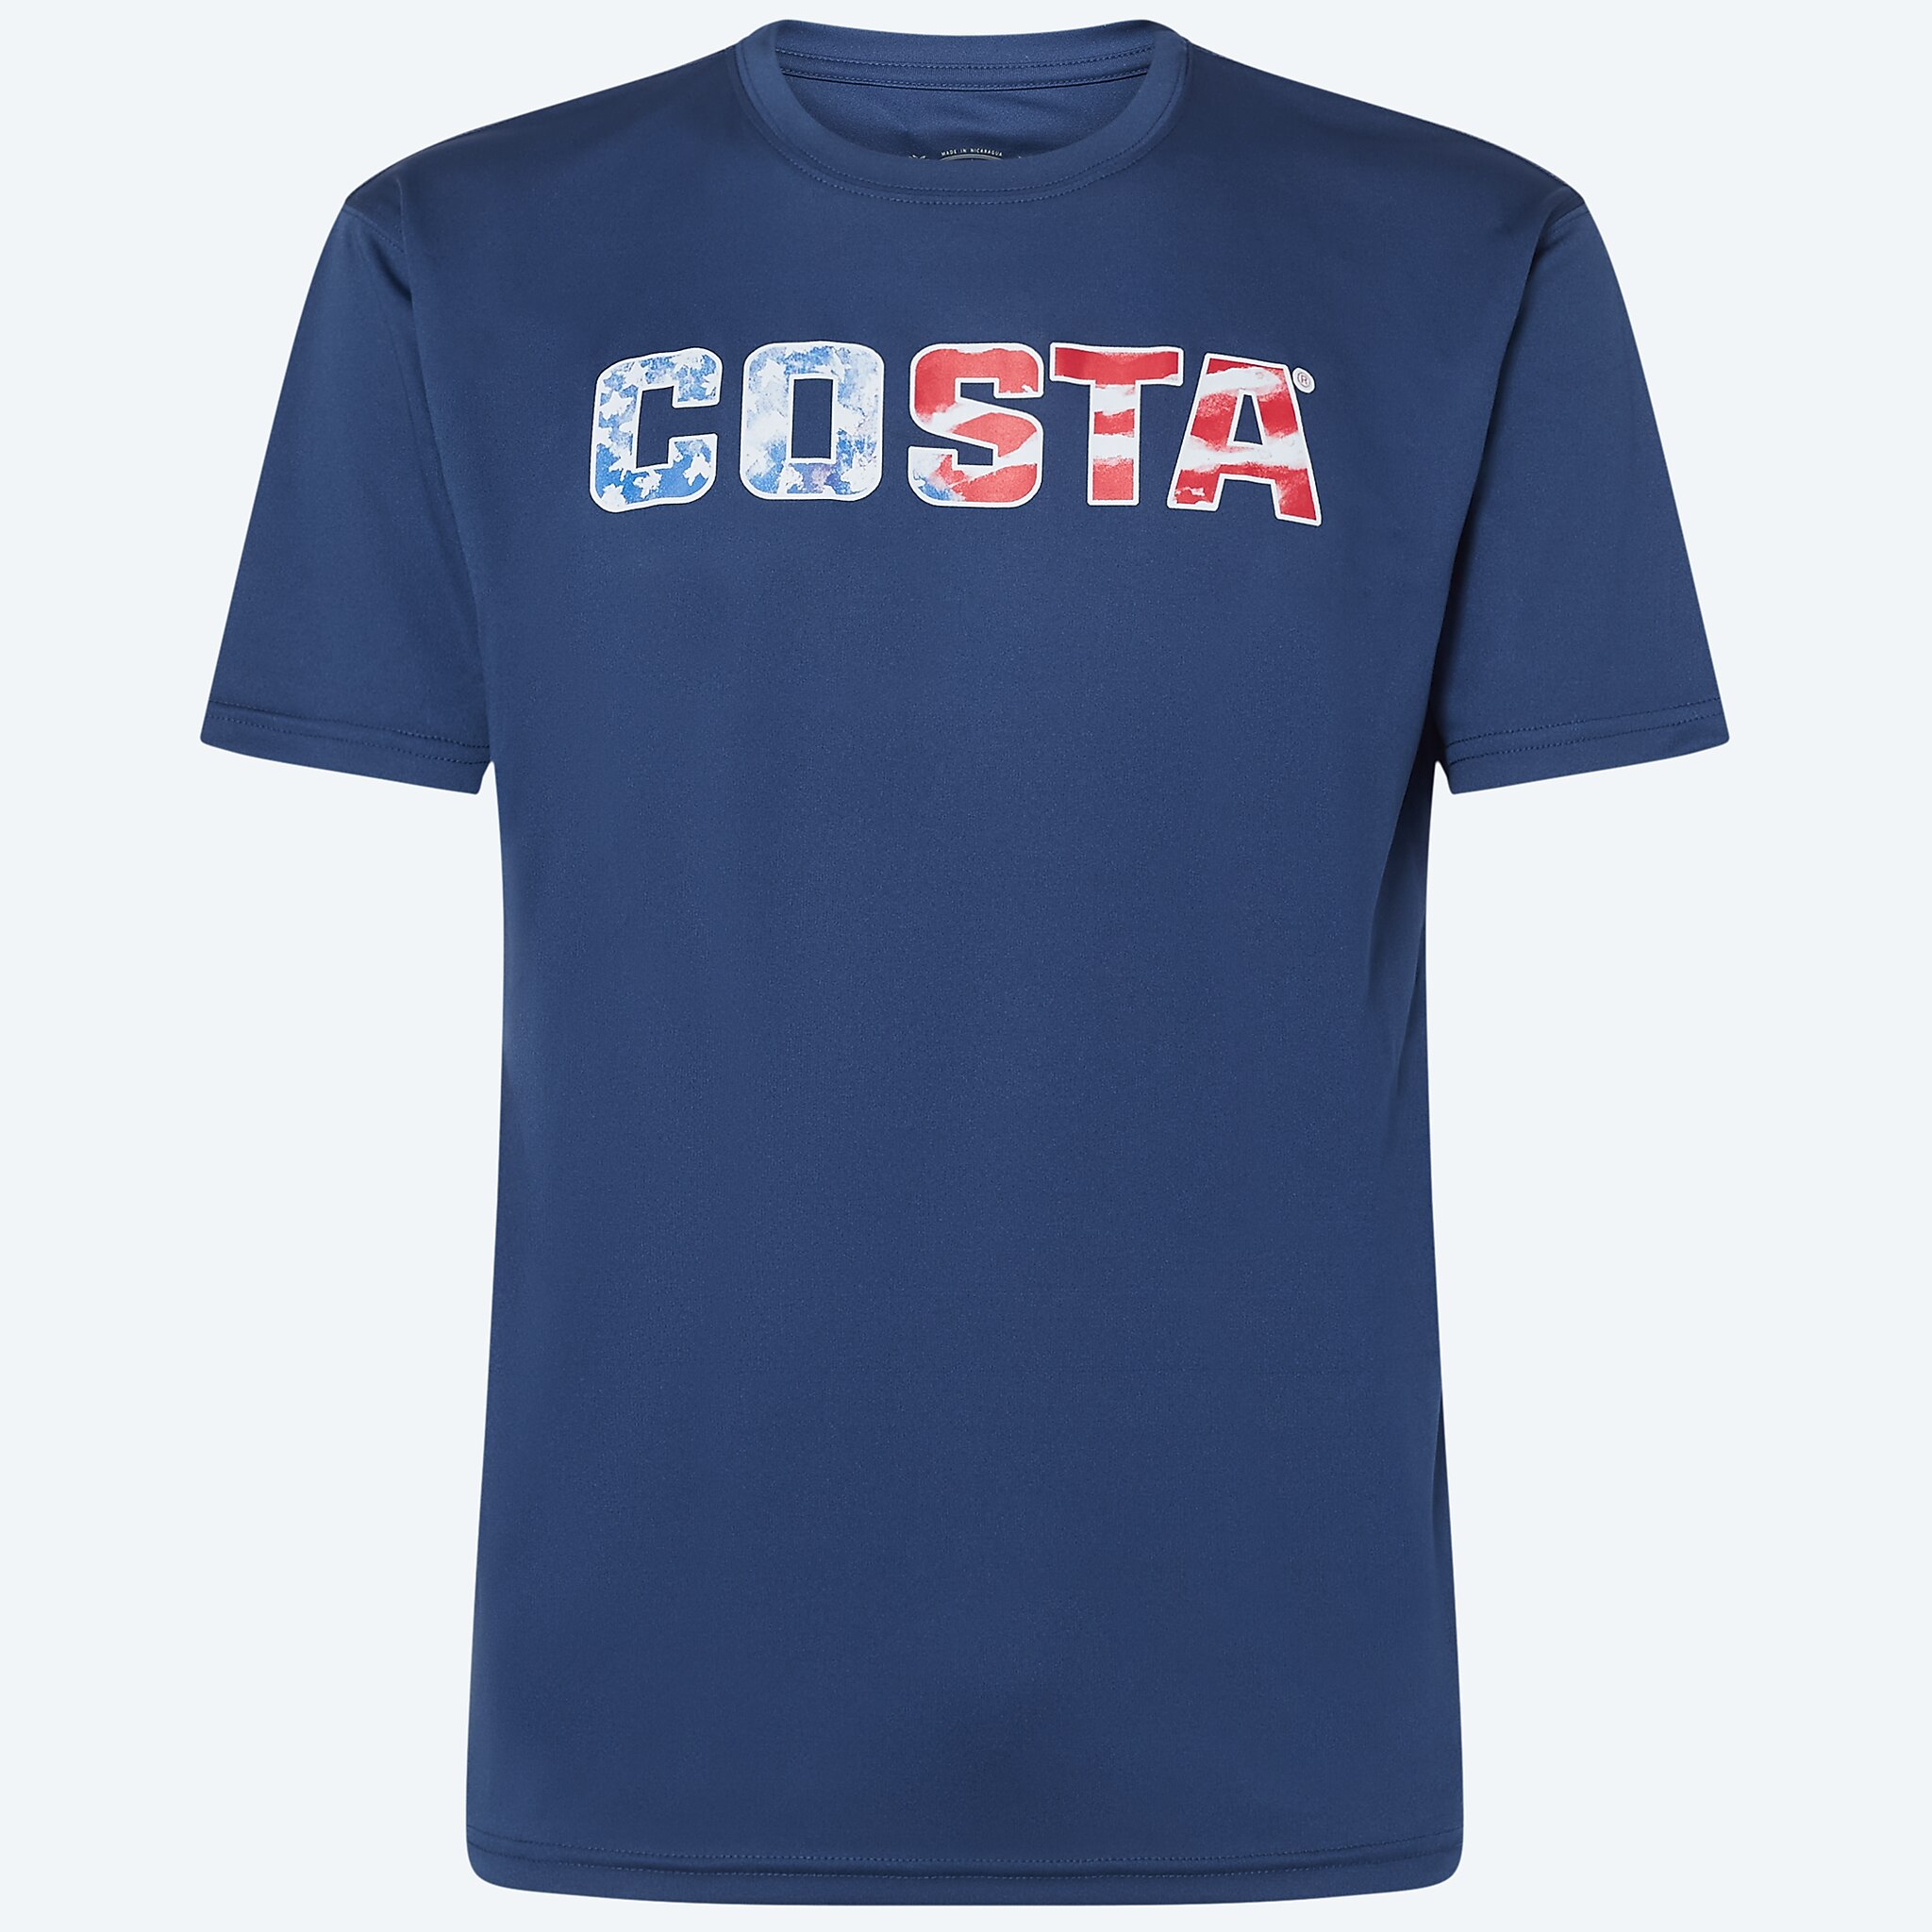 Costa Del Mar mens Emblem Marlin Short Sleeve Crewneck T Shirt